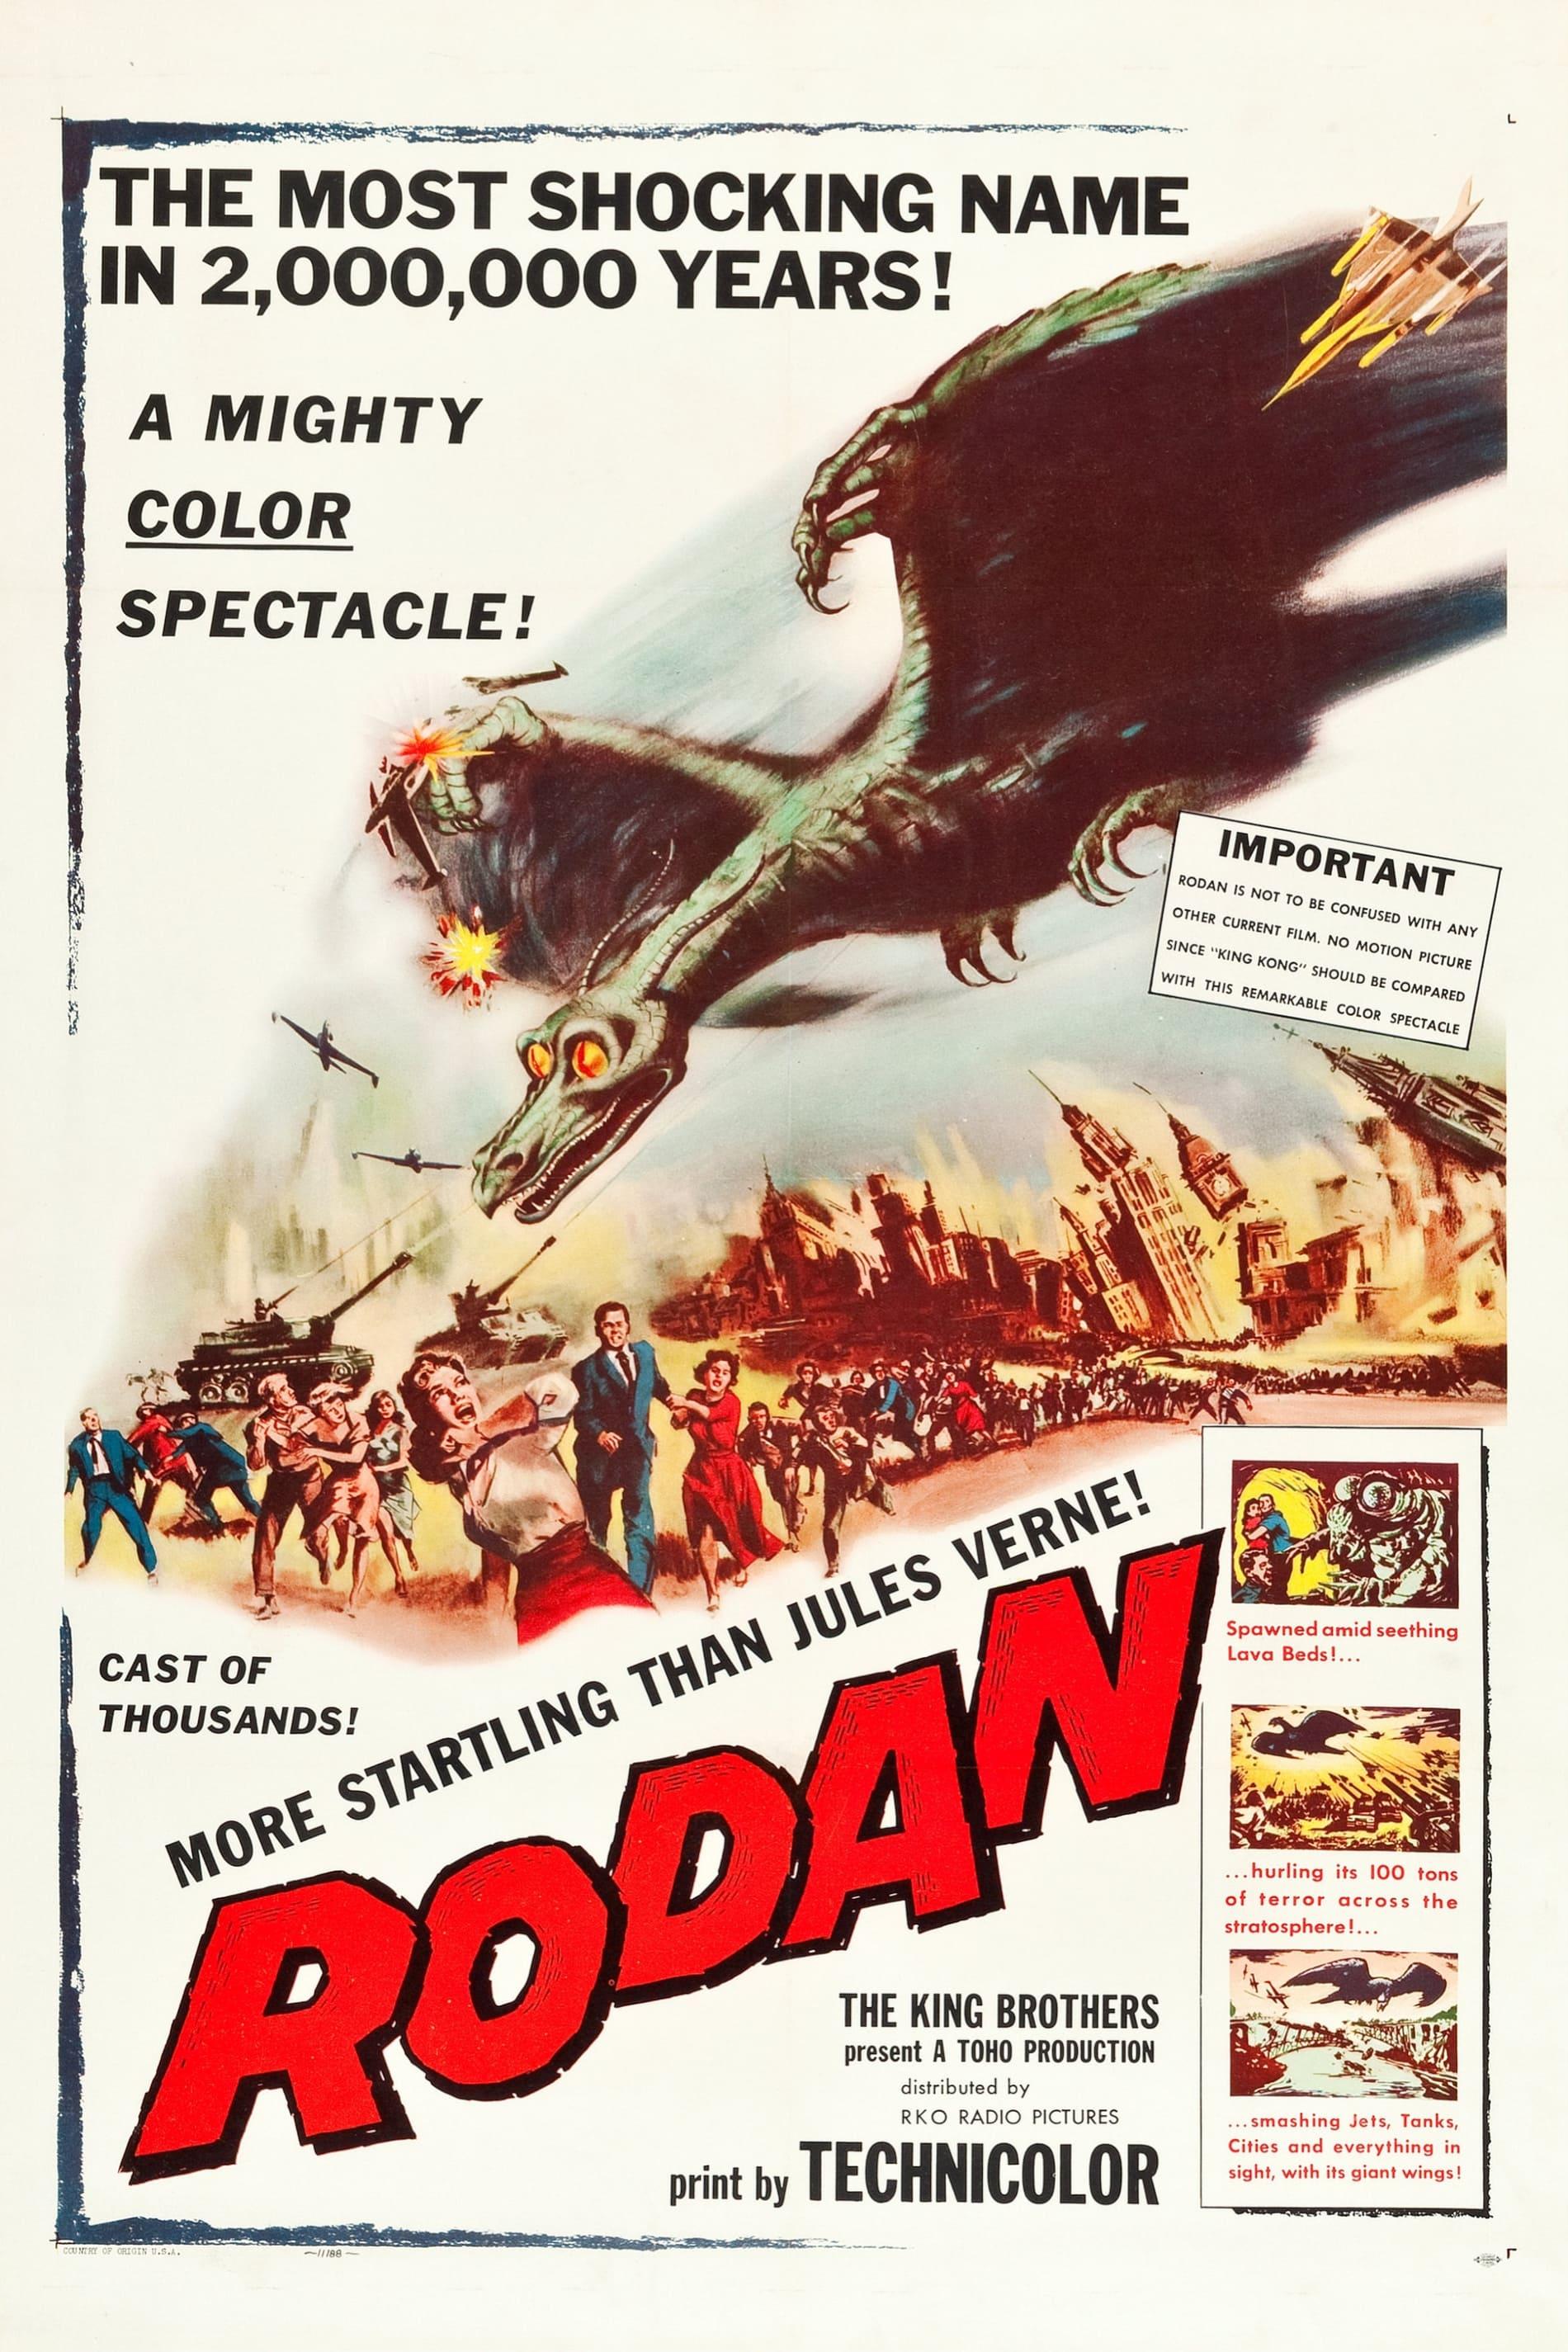 Rodan! The Flying Monster! poster